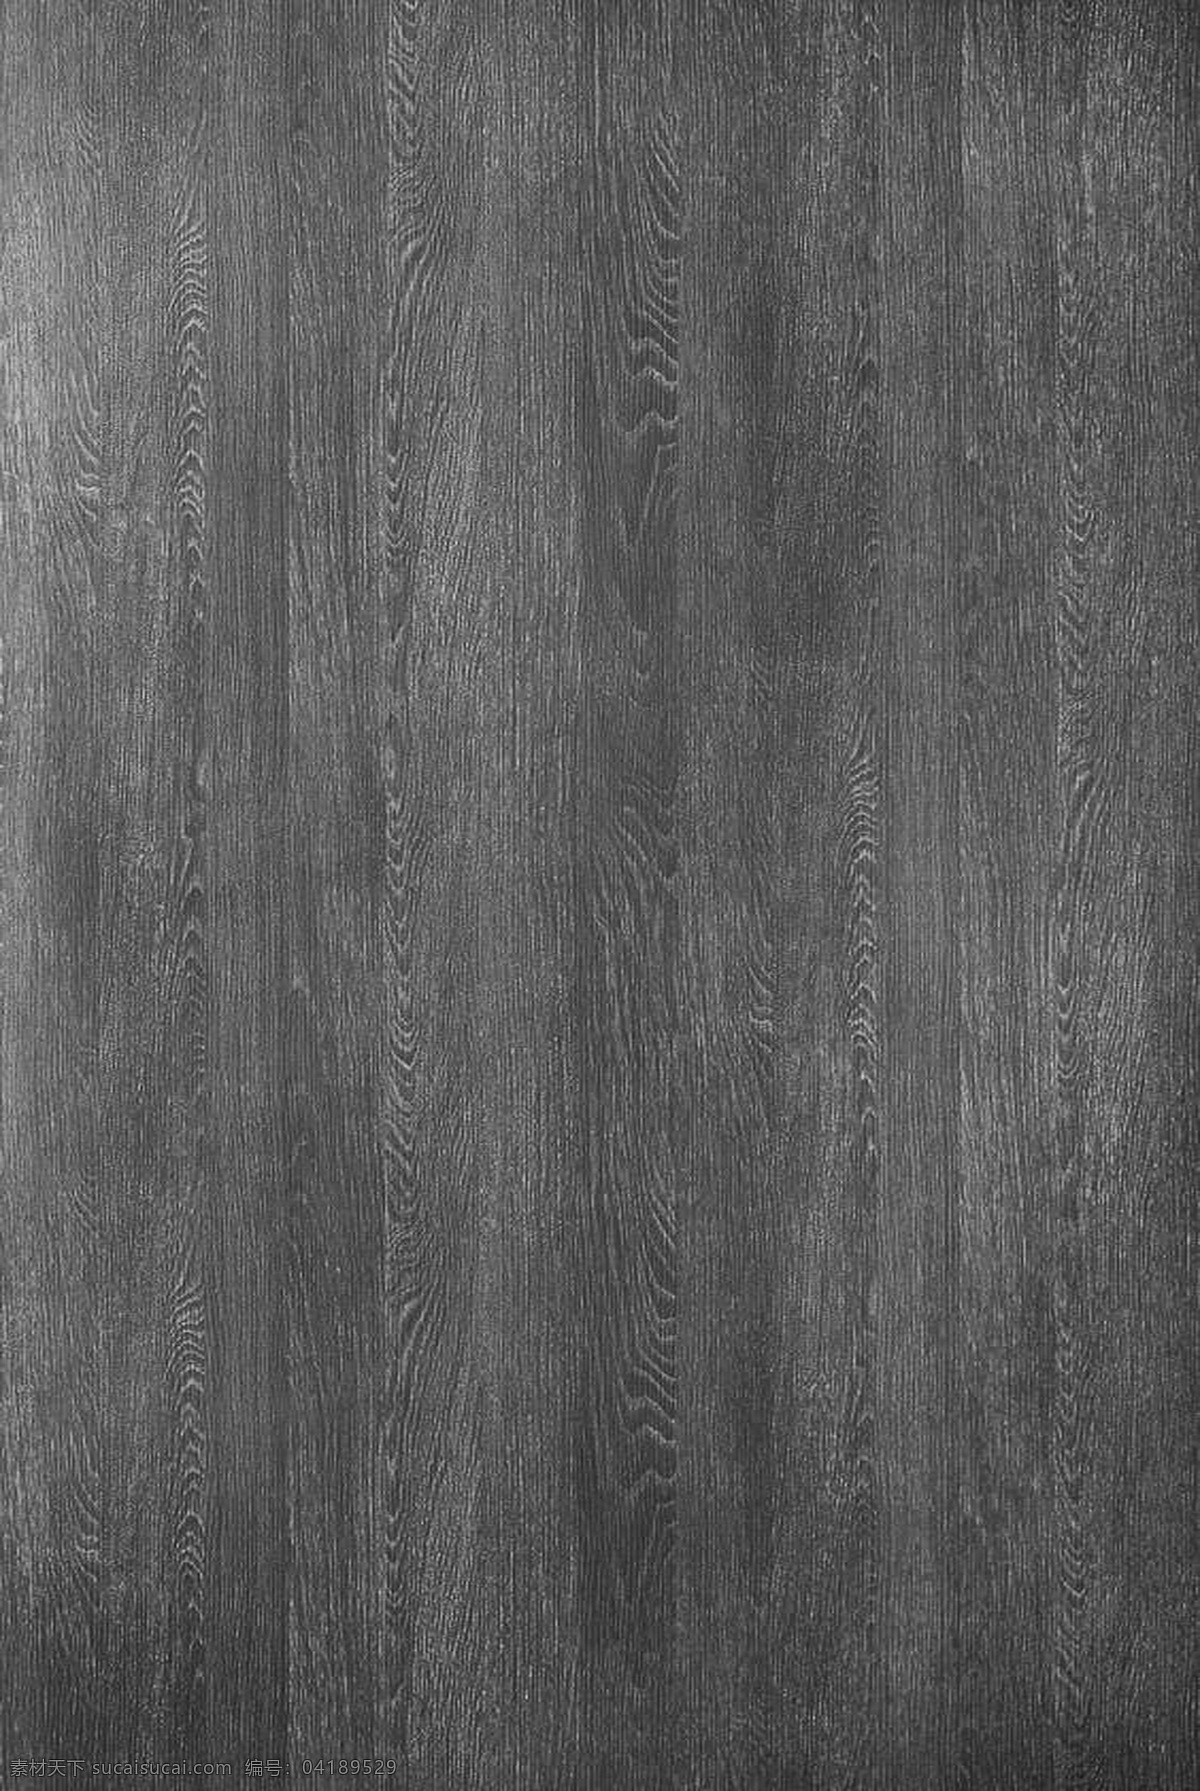 灰色 木纹 纹理 灰色木纹纹理 灰色木纹 木纹理 木地板 木地板纹理 生活百科 生活素材